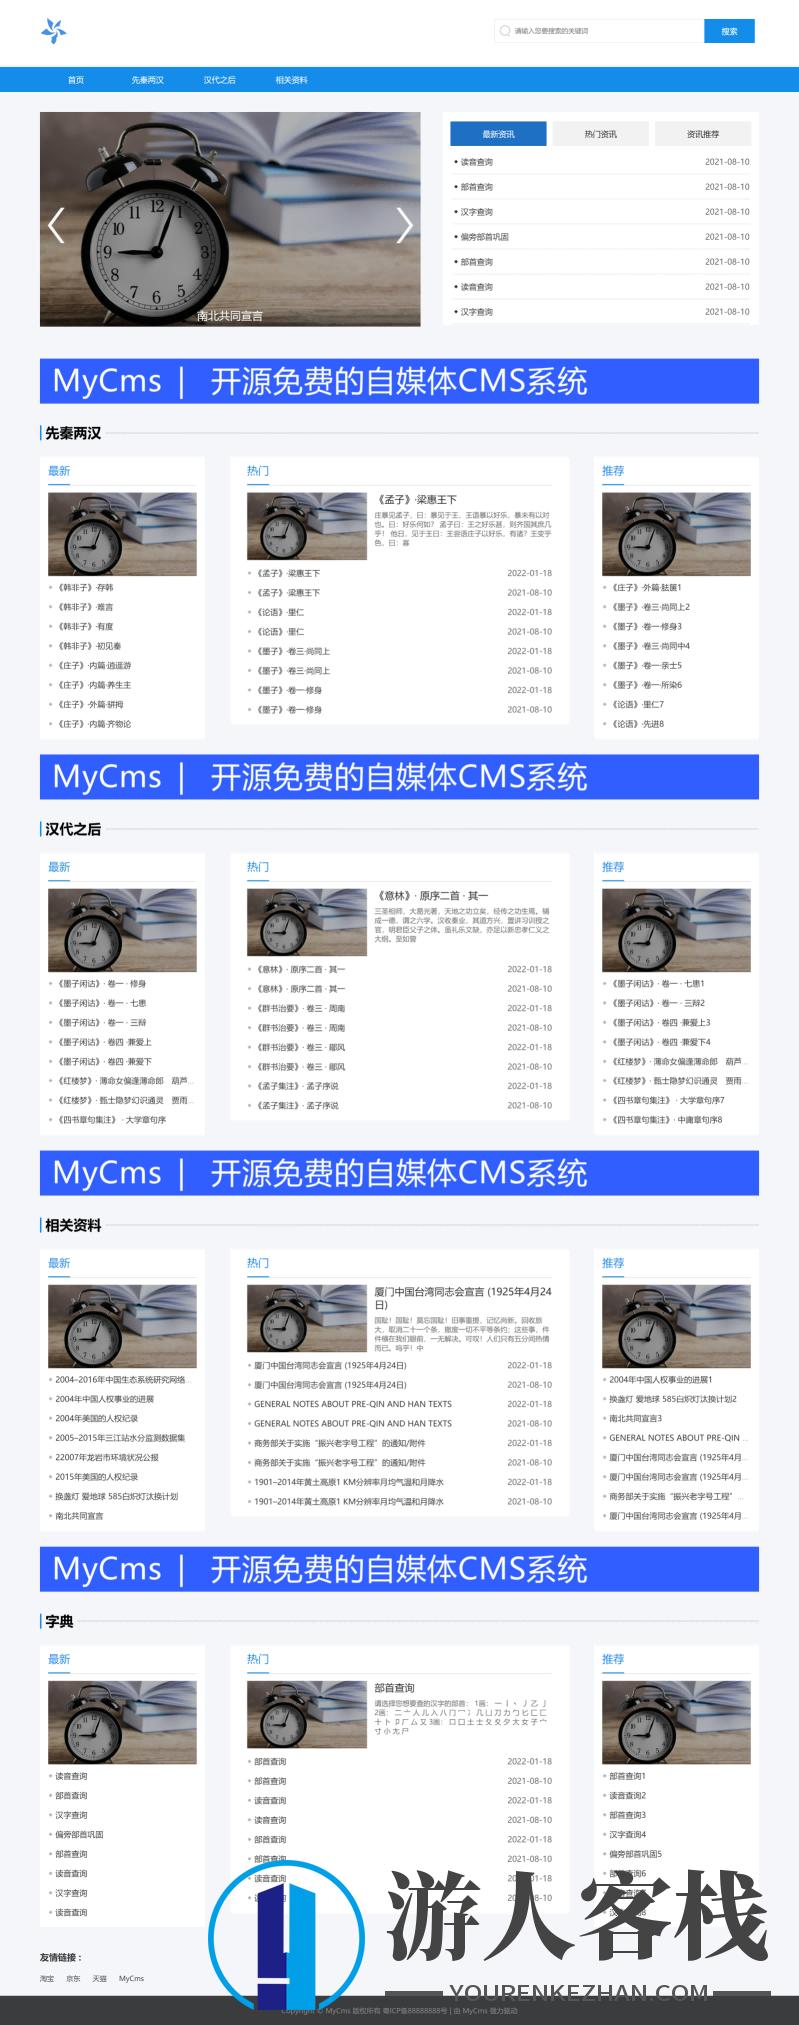 MyCms响应式博客资讯系统源码